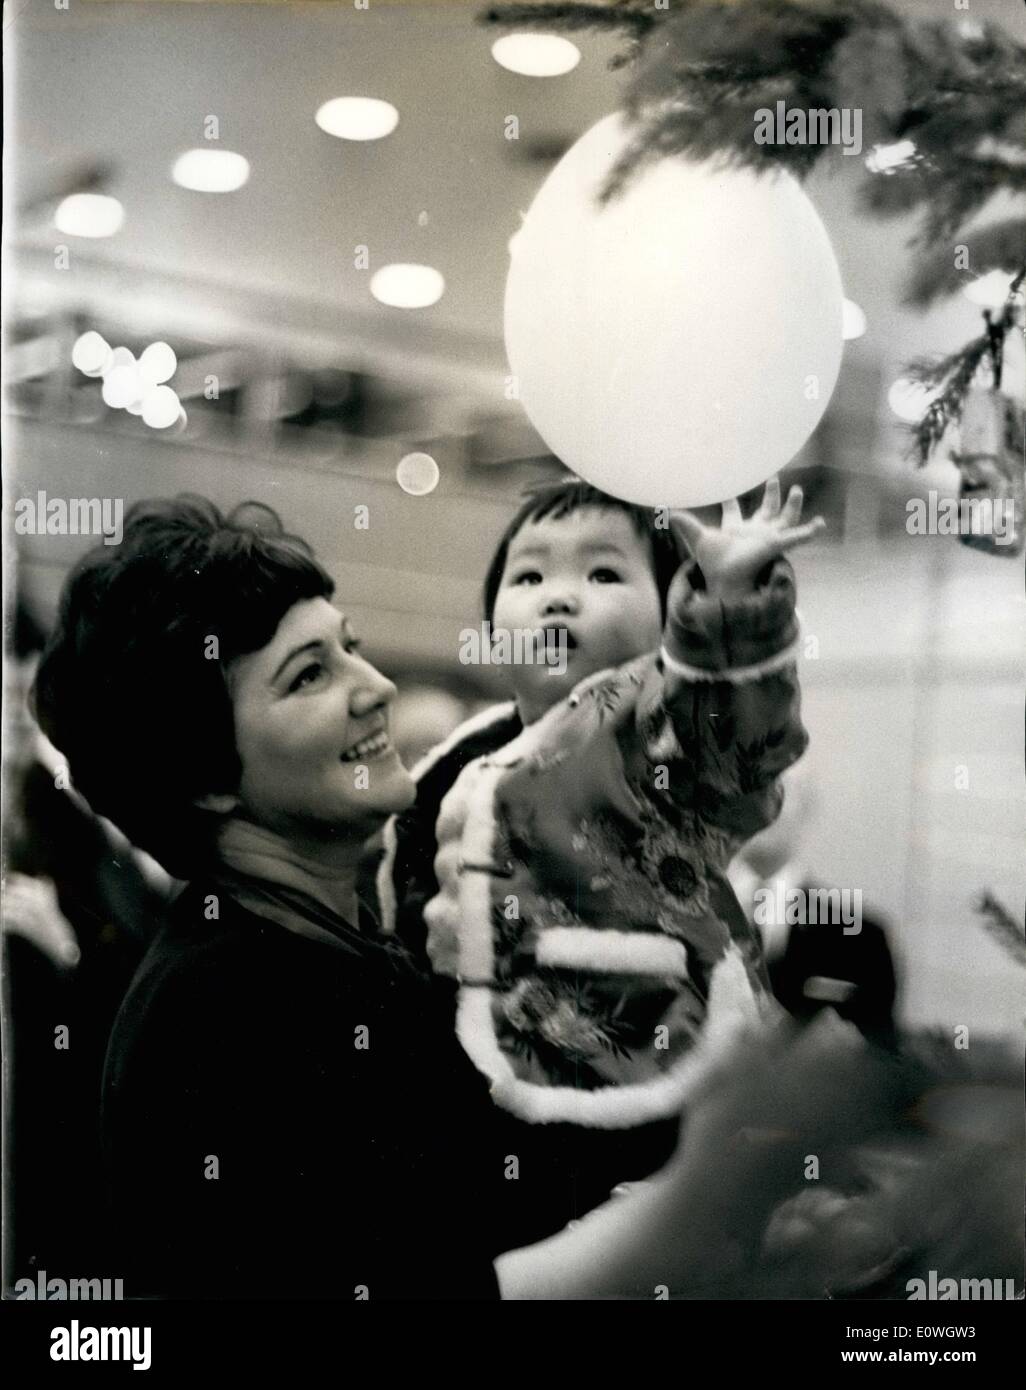 12. Dezember 1962 - ein frohes Weihnachtsfest für '' schöne Göttin ''... Kind von Gossen von Hong Kong... Neun Babys kam gestern Abend in London von der Kronkolonie Hongkong... Sie wurden hier von der International Social Service - Annahme hier von britischen Paare gekauft. Sie gerettet worden war, von den Dachrinnen und Straßen von Hong Kong - von ihren Eltern verlassen worden... Die meisten von ihnen werden neu getauft-zu befähigen, leichter mit britischen Familien passen... Keystone-Fotoshows: Ling Tai (schöne Goddess  - erreicht glücklich für eine Ballon - wie sie von Frau gehalten wird Stockfoto